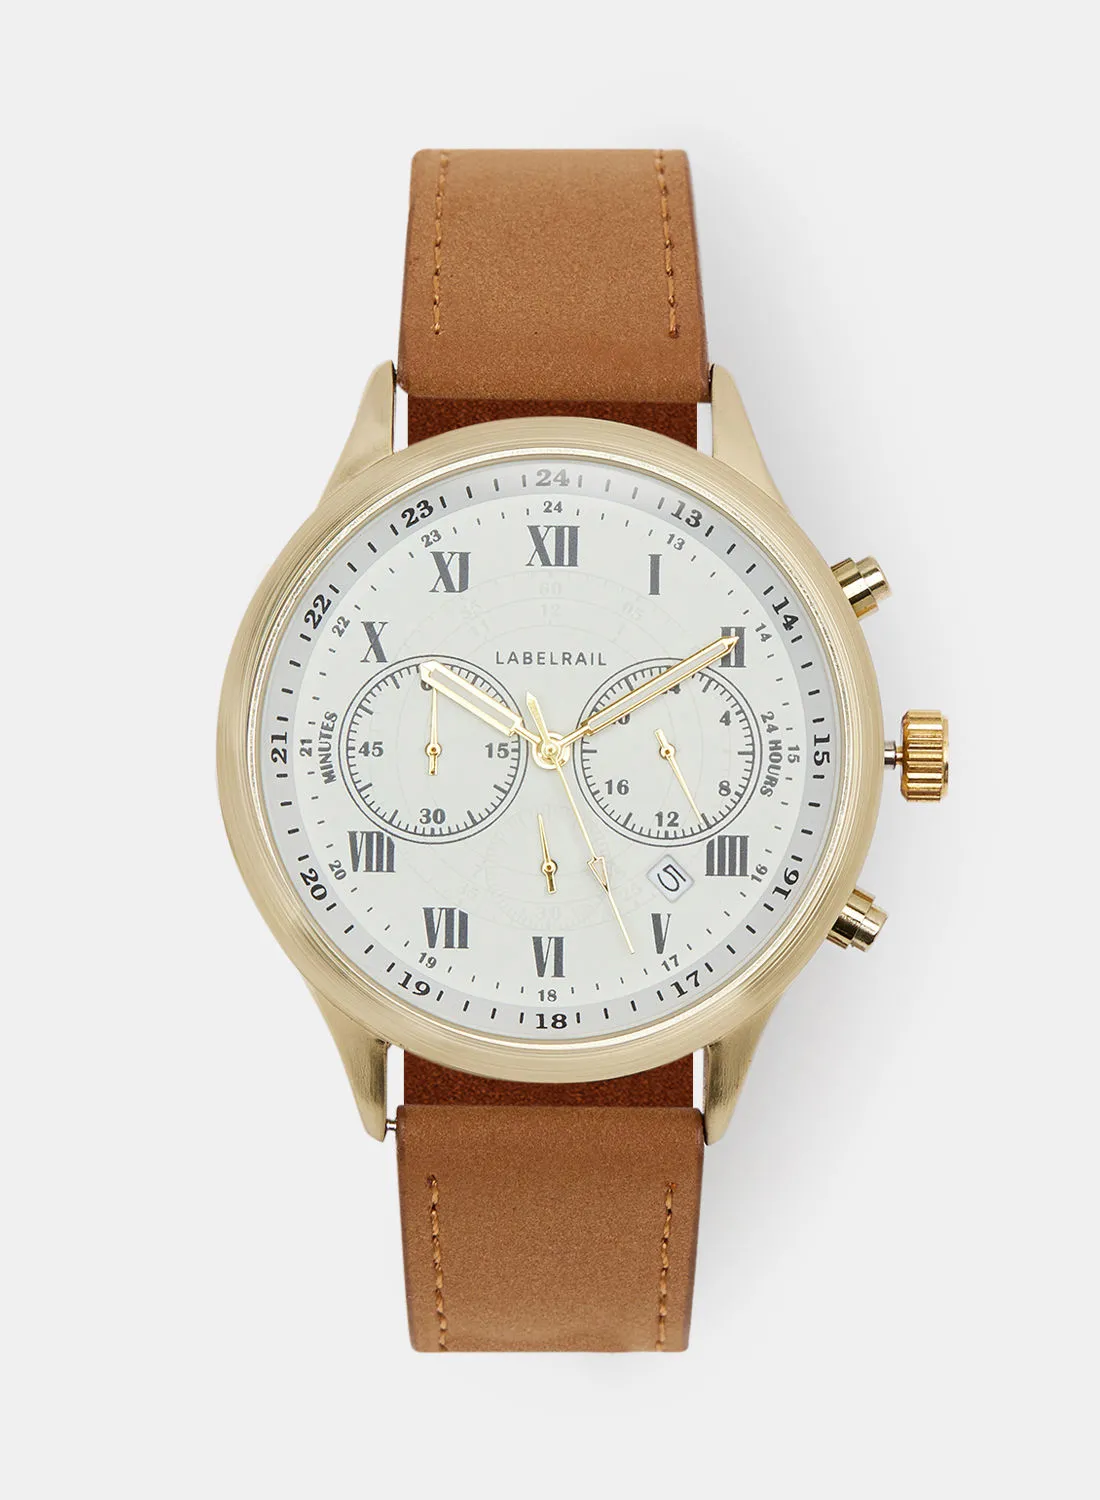 LABEL RAIL Men's Chronograph Quartz Watch